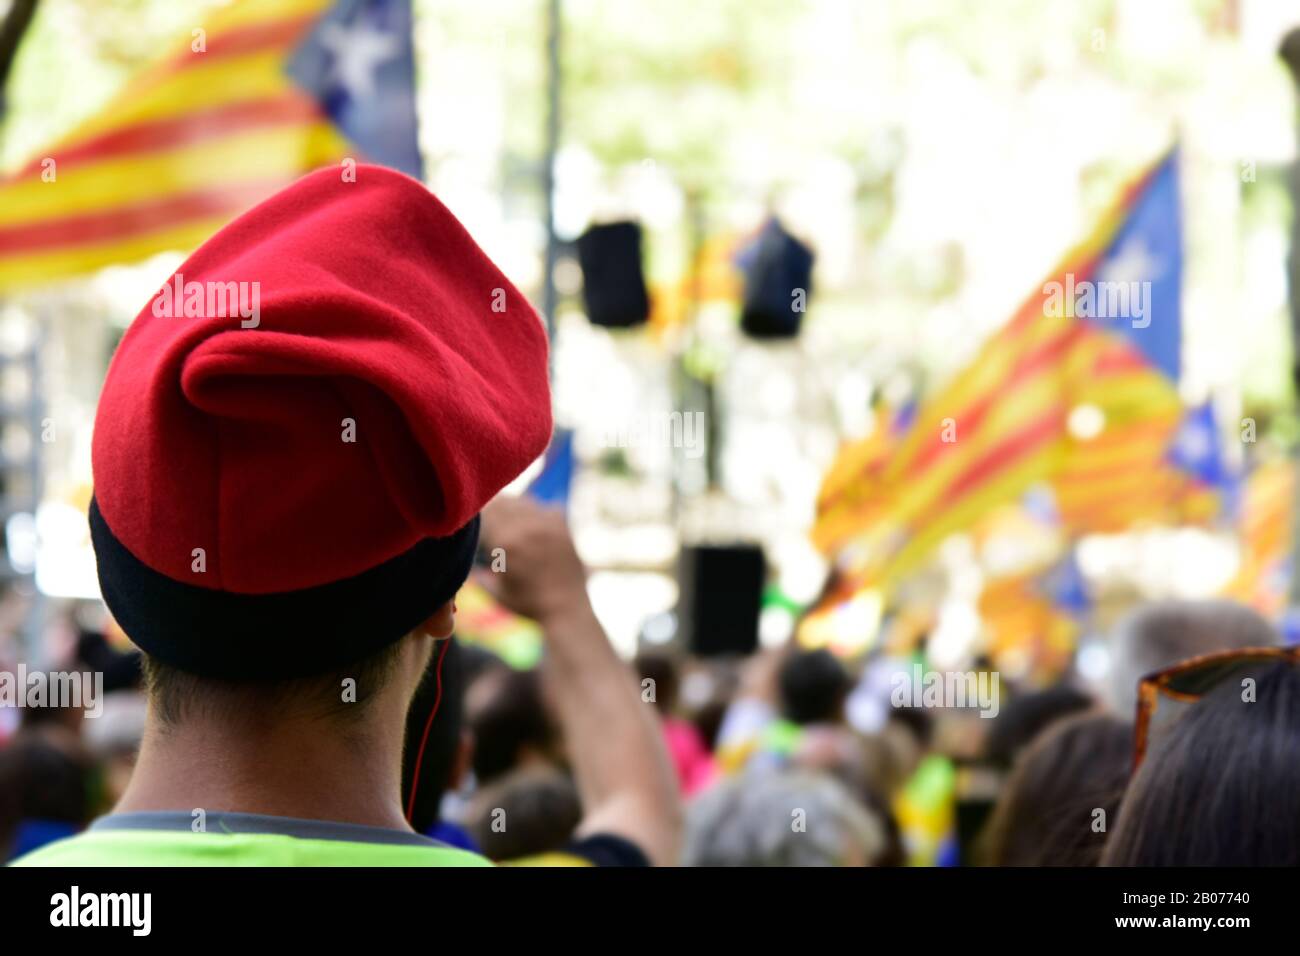 Barcelona, SPANIEN - 11. SEPTEMBER 2017: Menschen, die während ihrer Nati an der Kundgebung zur Unterstützung der Unabhängigkeit Kataloniens in Barcelona, Spanien teilnehmen Stockfoto